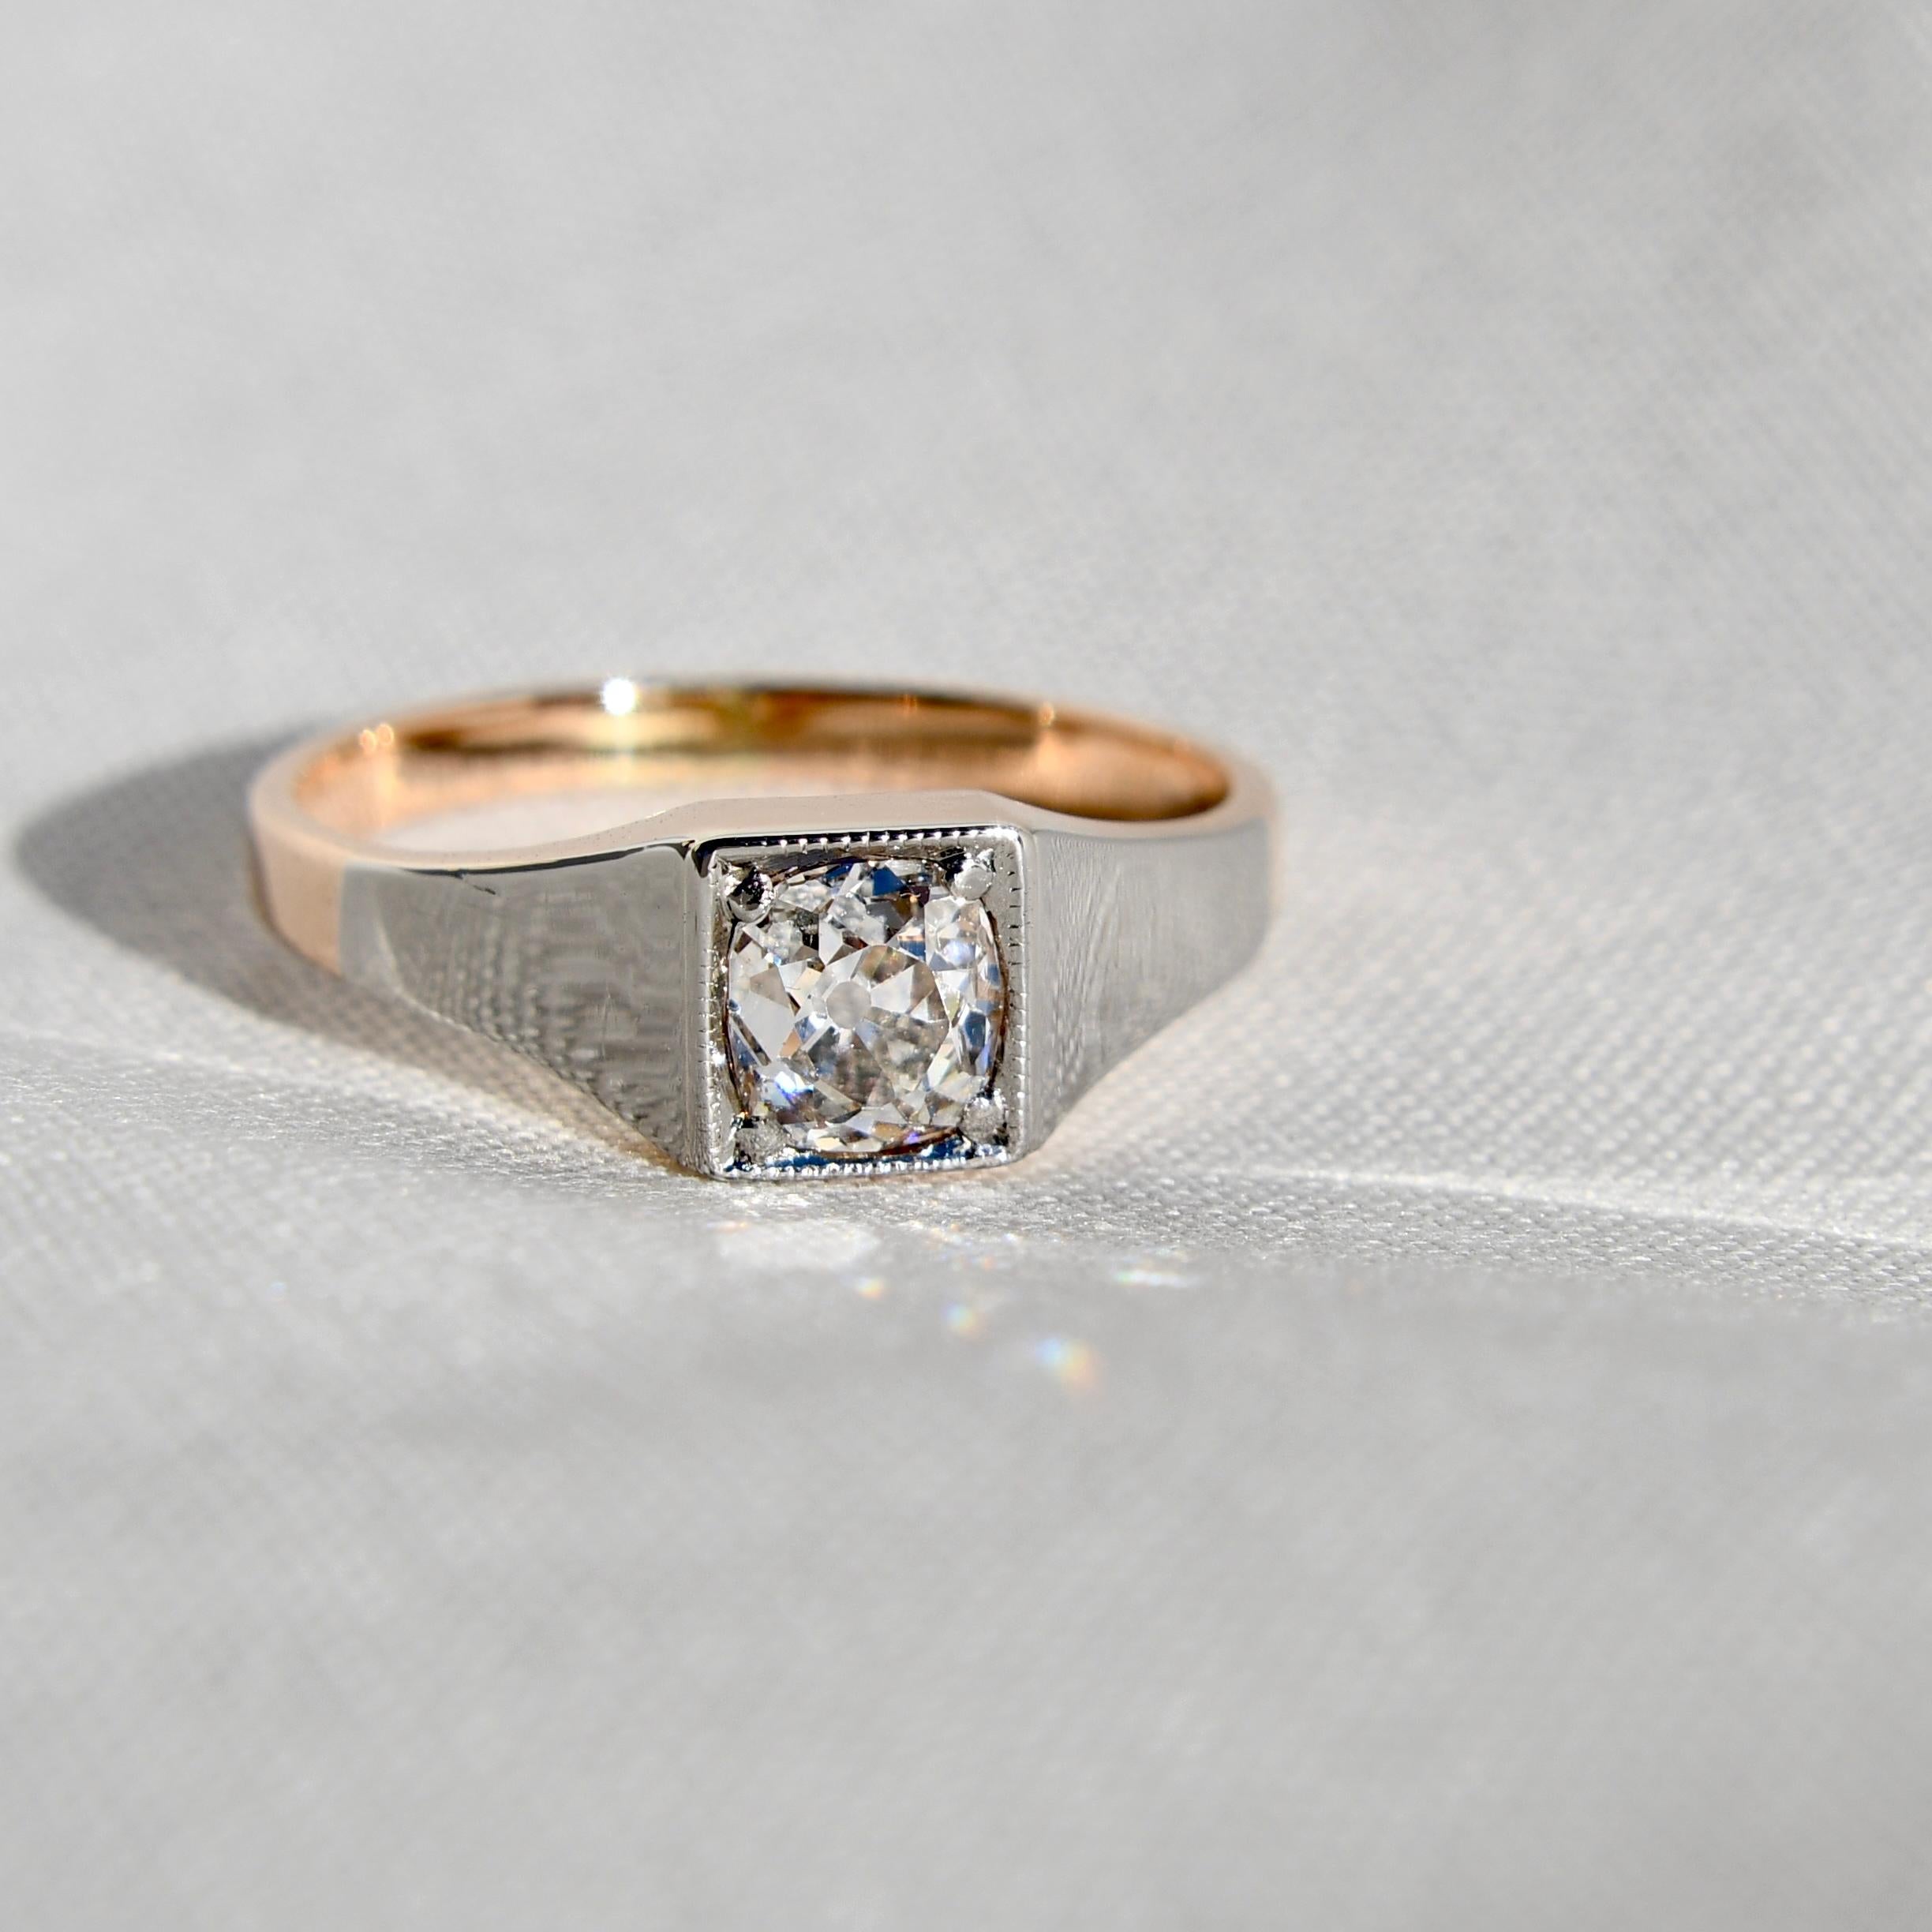 Dieser Ring wurde um 1910 in Deutschland hergestellt und befindet sich in einem ausgezeichneten, antiken Zustand. 

Ein GIA-Zertifikat für den Diamanten liegt bei.

- Ein Diamant im alten Minenschliff, 5,50 x 5,00 x 3,99 mm/ 0,89ct (J/ SI1) 
- 585/